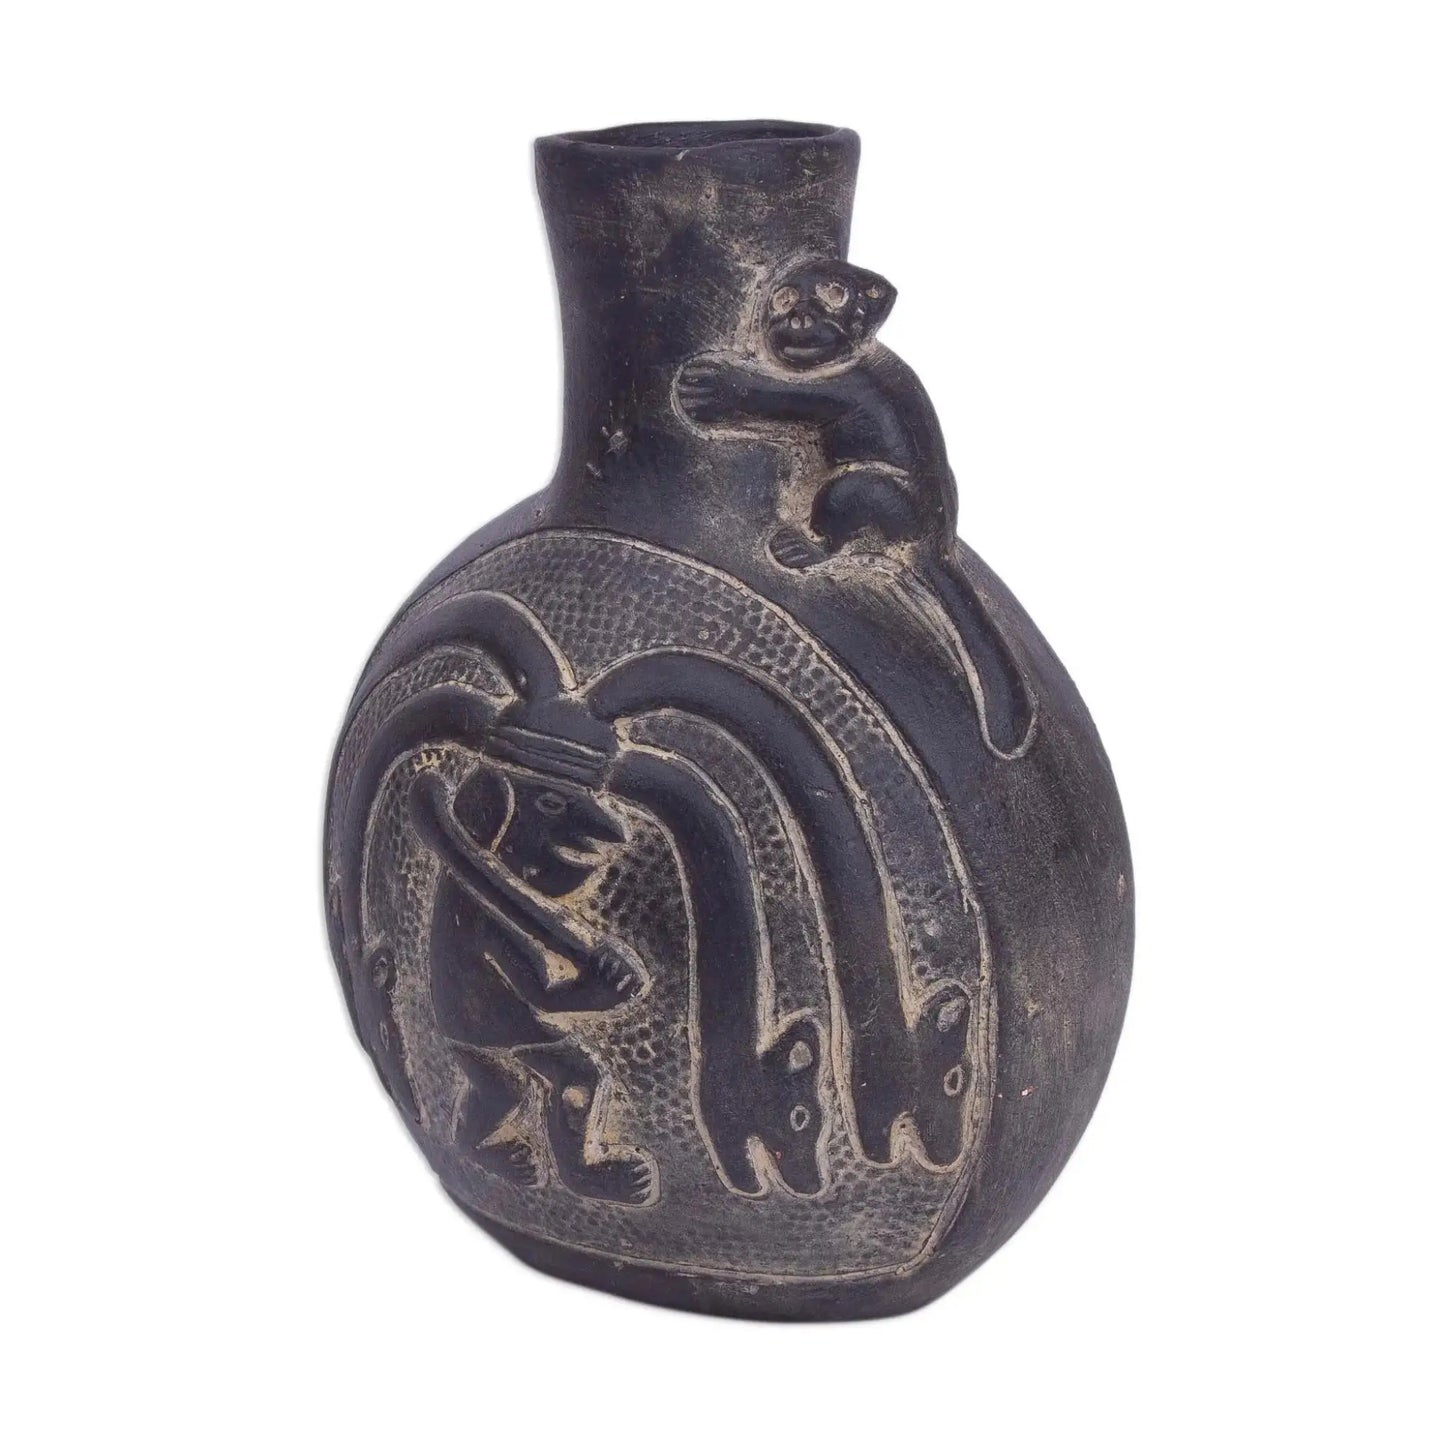 Chimu Divinity - Ceramic Decorative Vase from Peru - Art